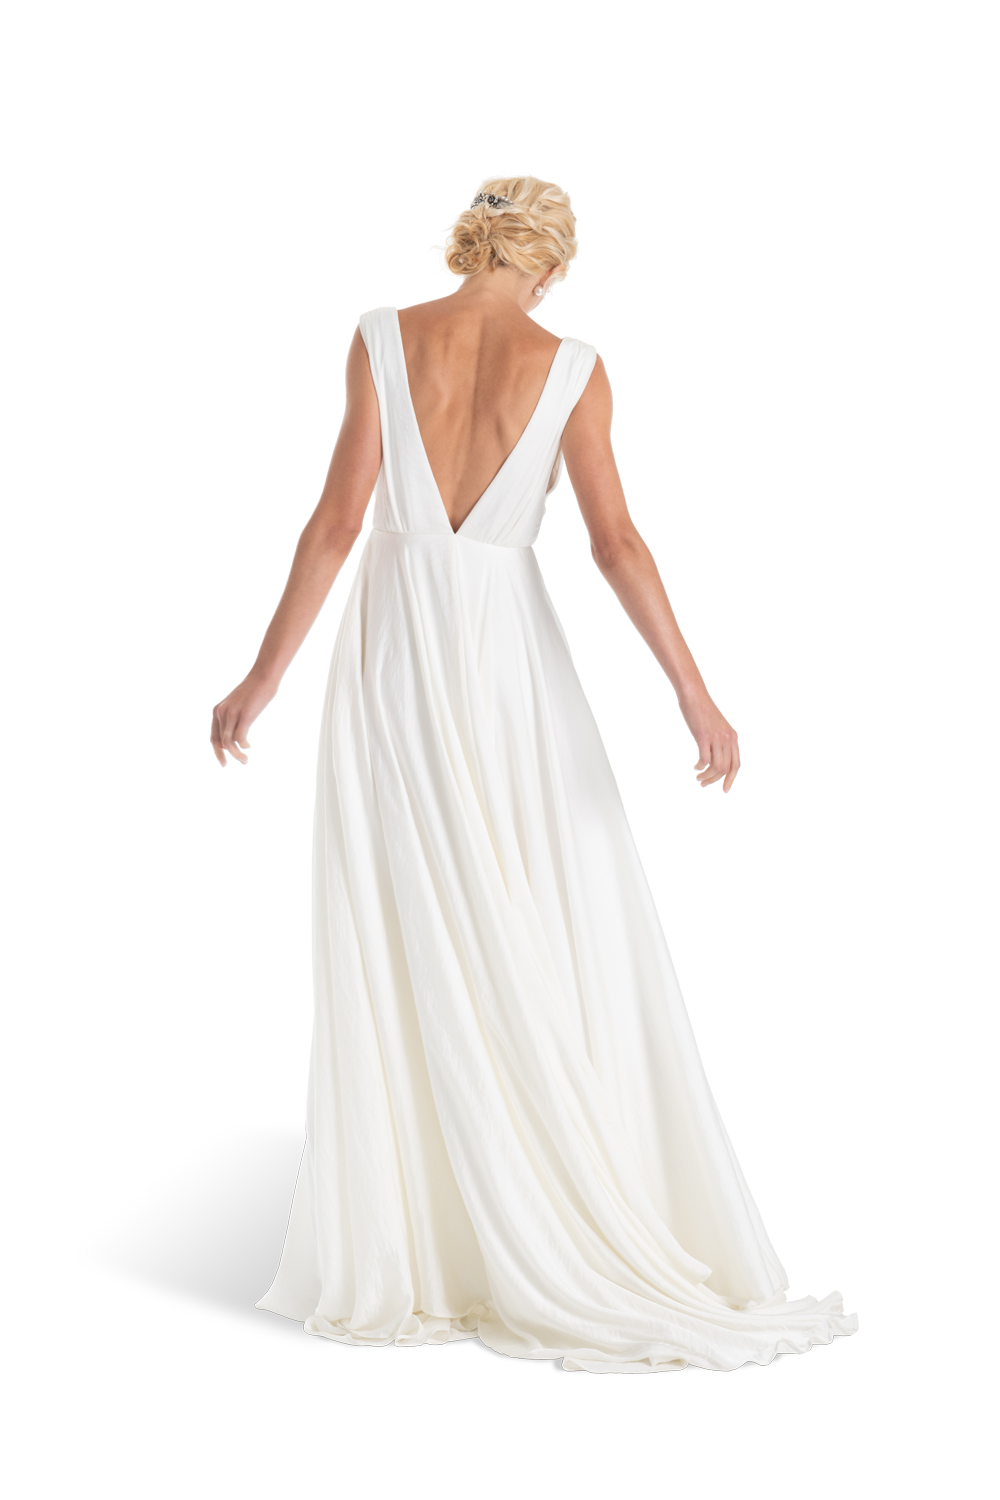 GC#911962 - Joanna August Joplin Dress in Size 12